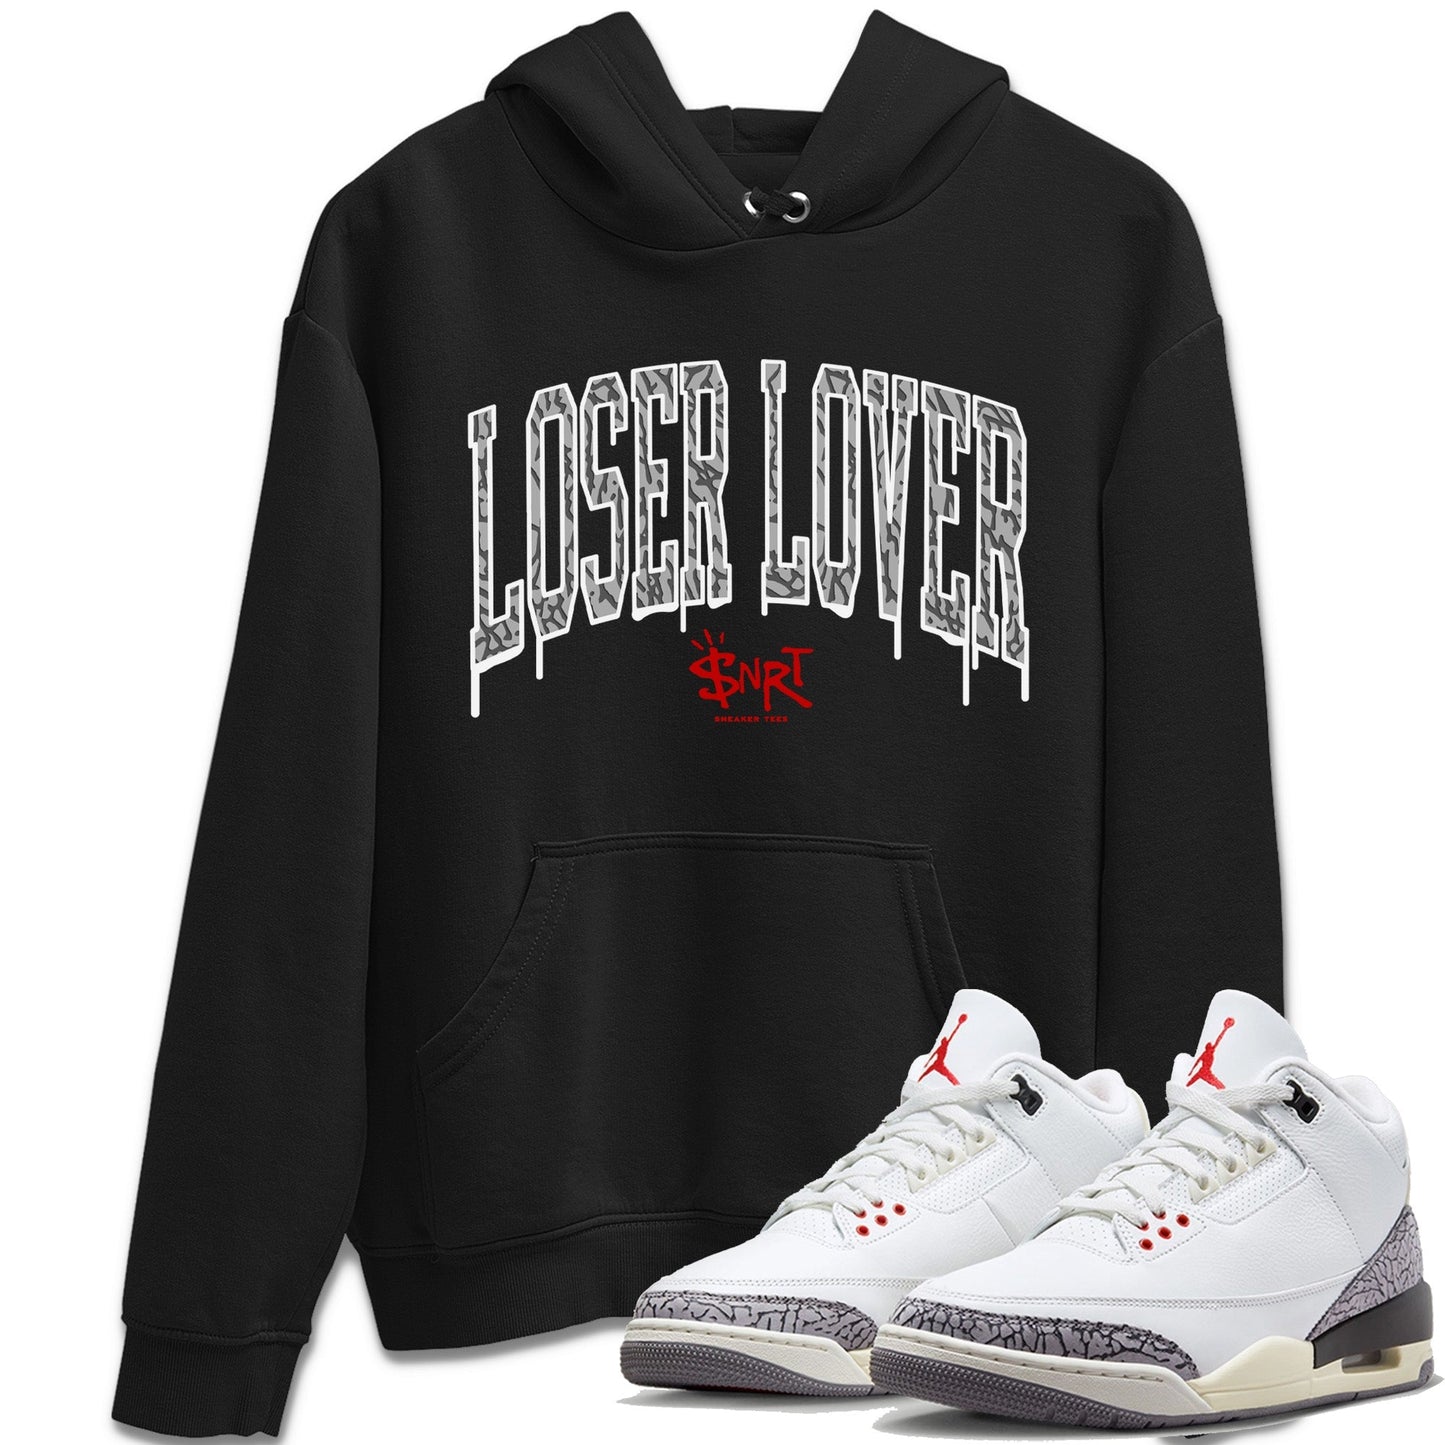 Air Jordan 3 White Cement Sneaker Tees Drip Gear Zone Loser Lover Letter Sneaker Tees Air Jordan 3 Retro White Cement Shirt Unisex Shirts Black 1